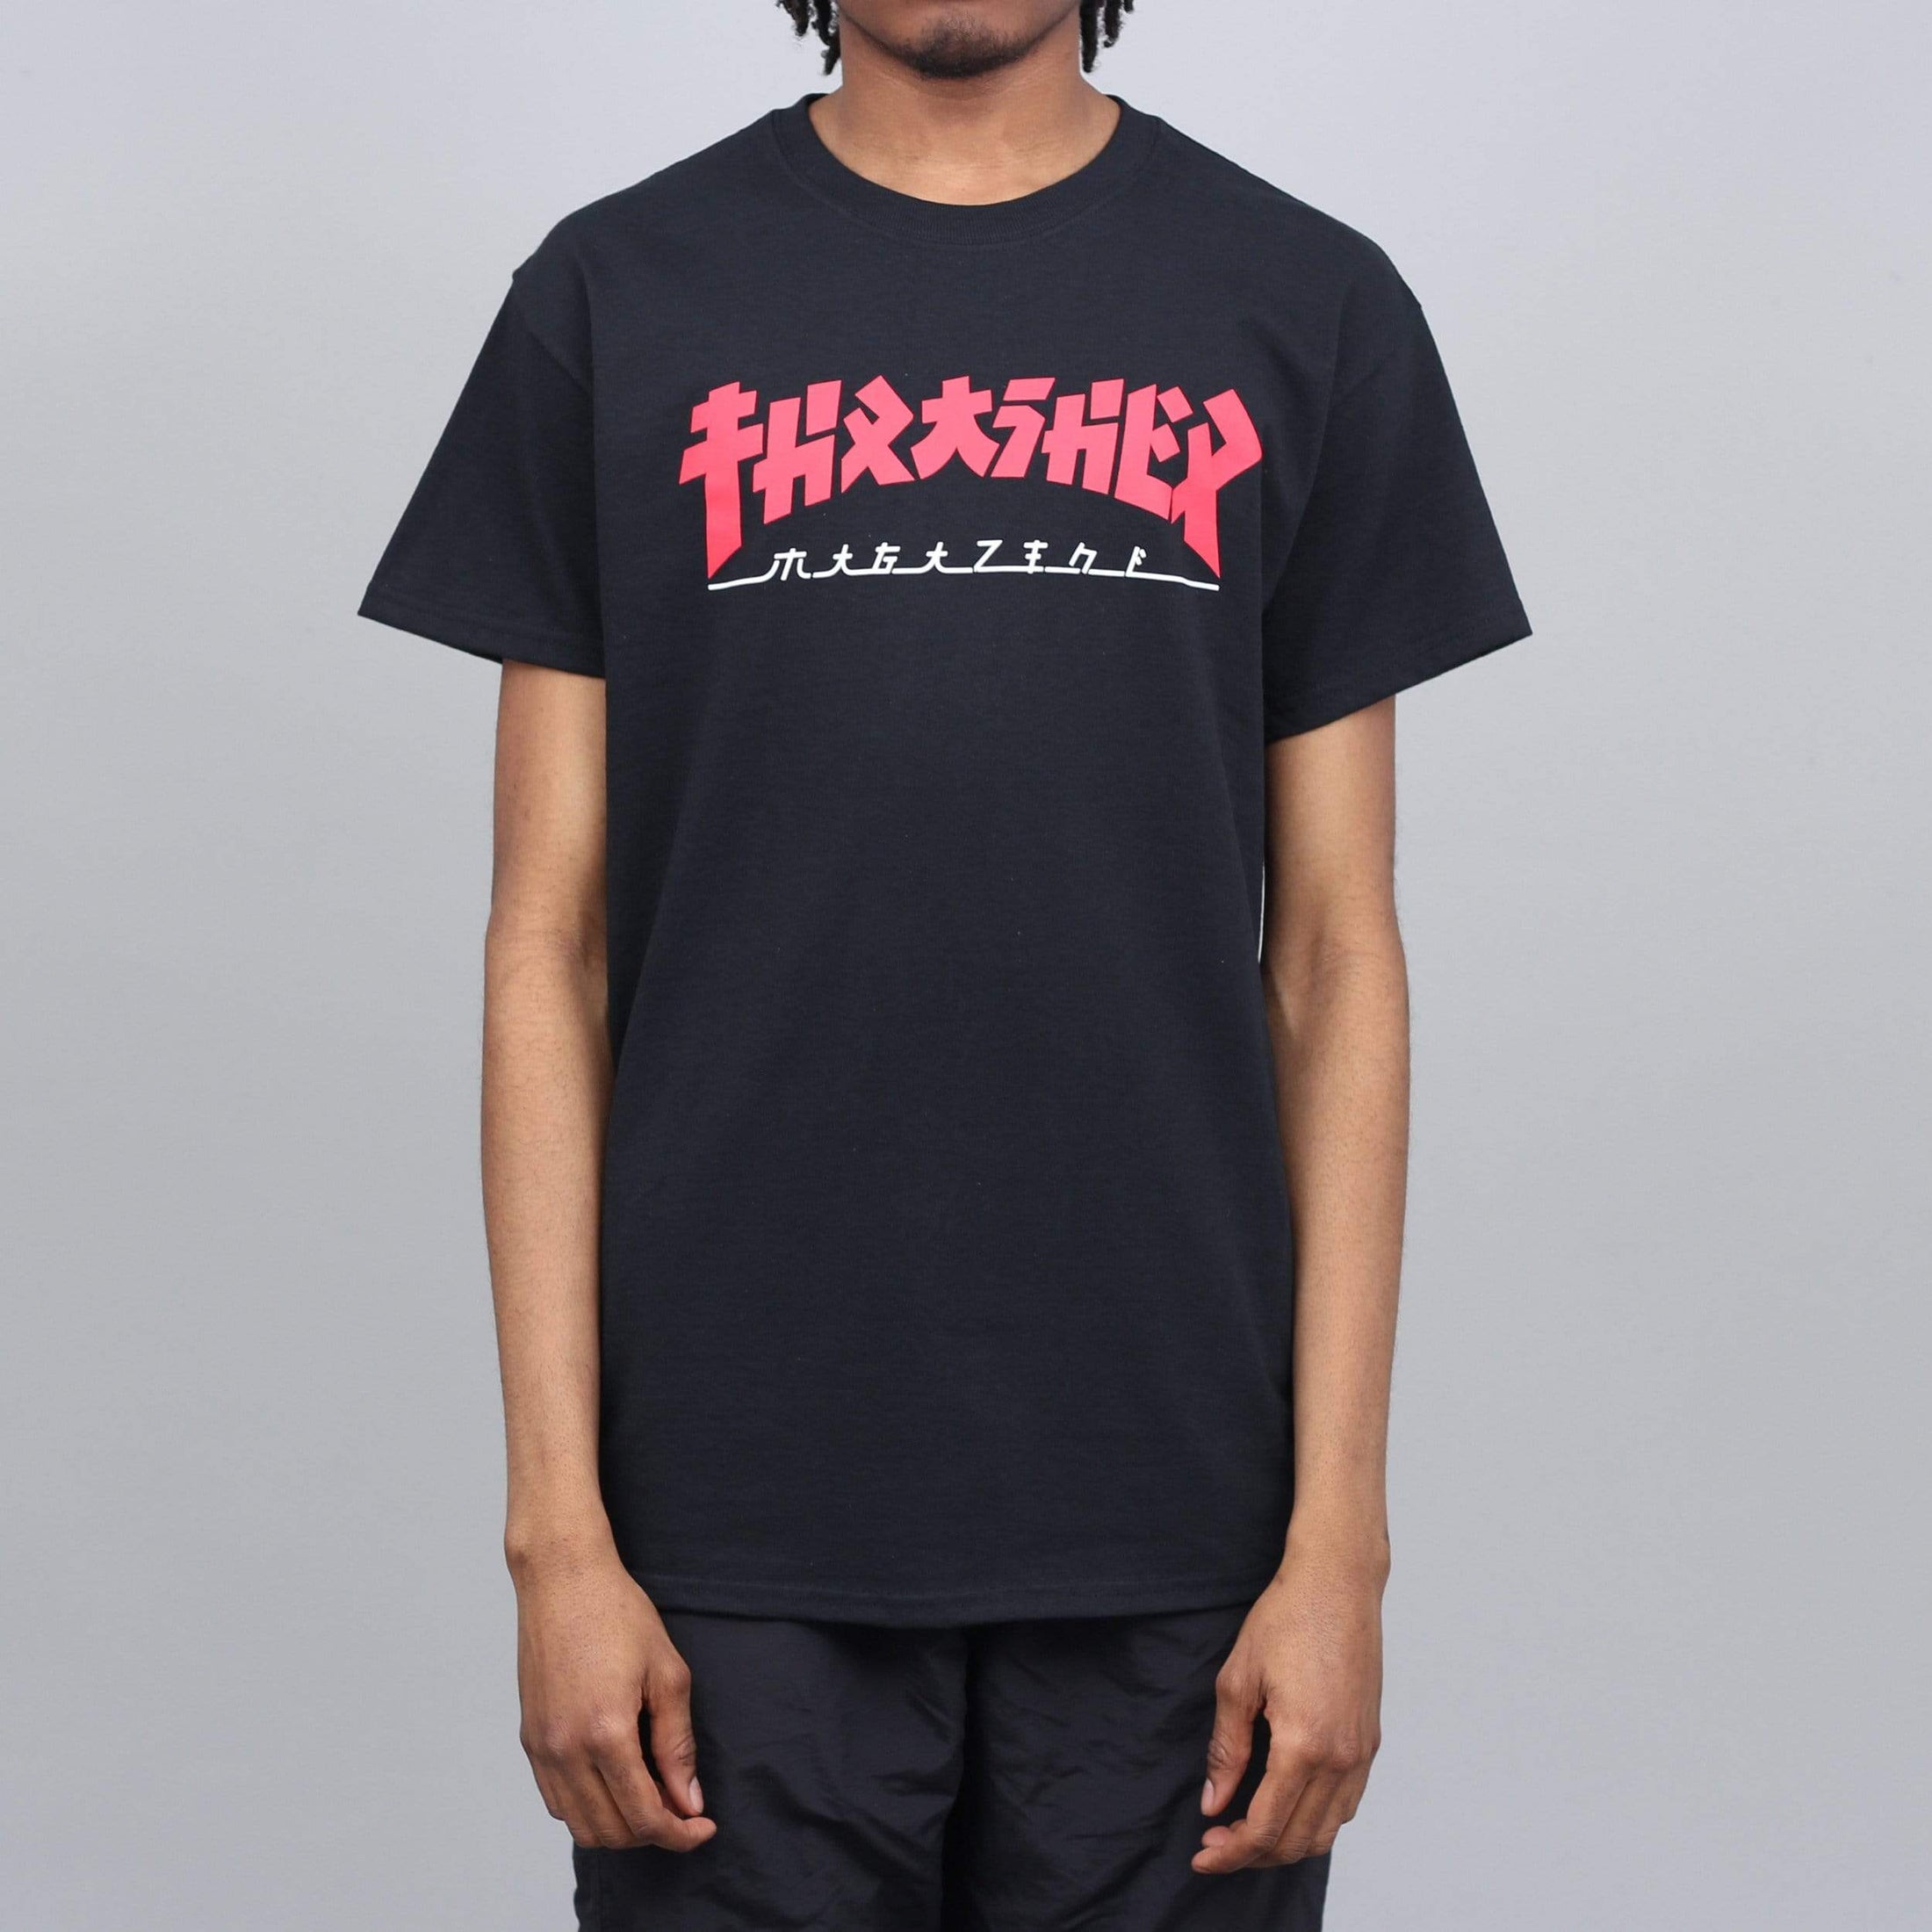 Thrasher Godzilla T-Shirt Black